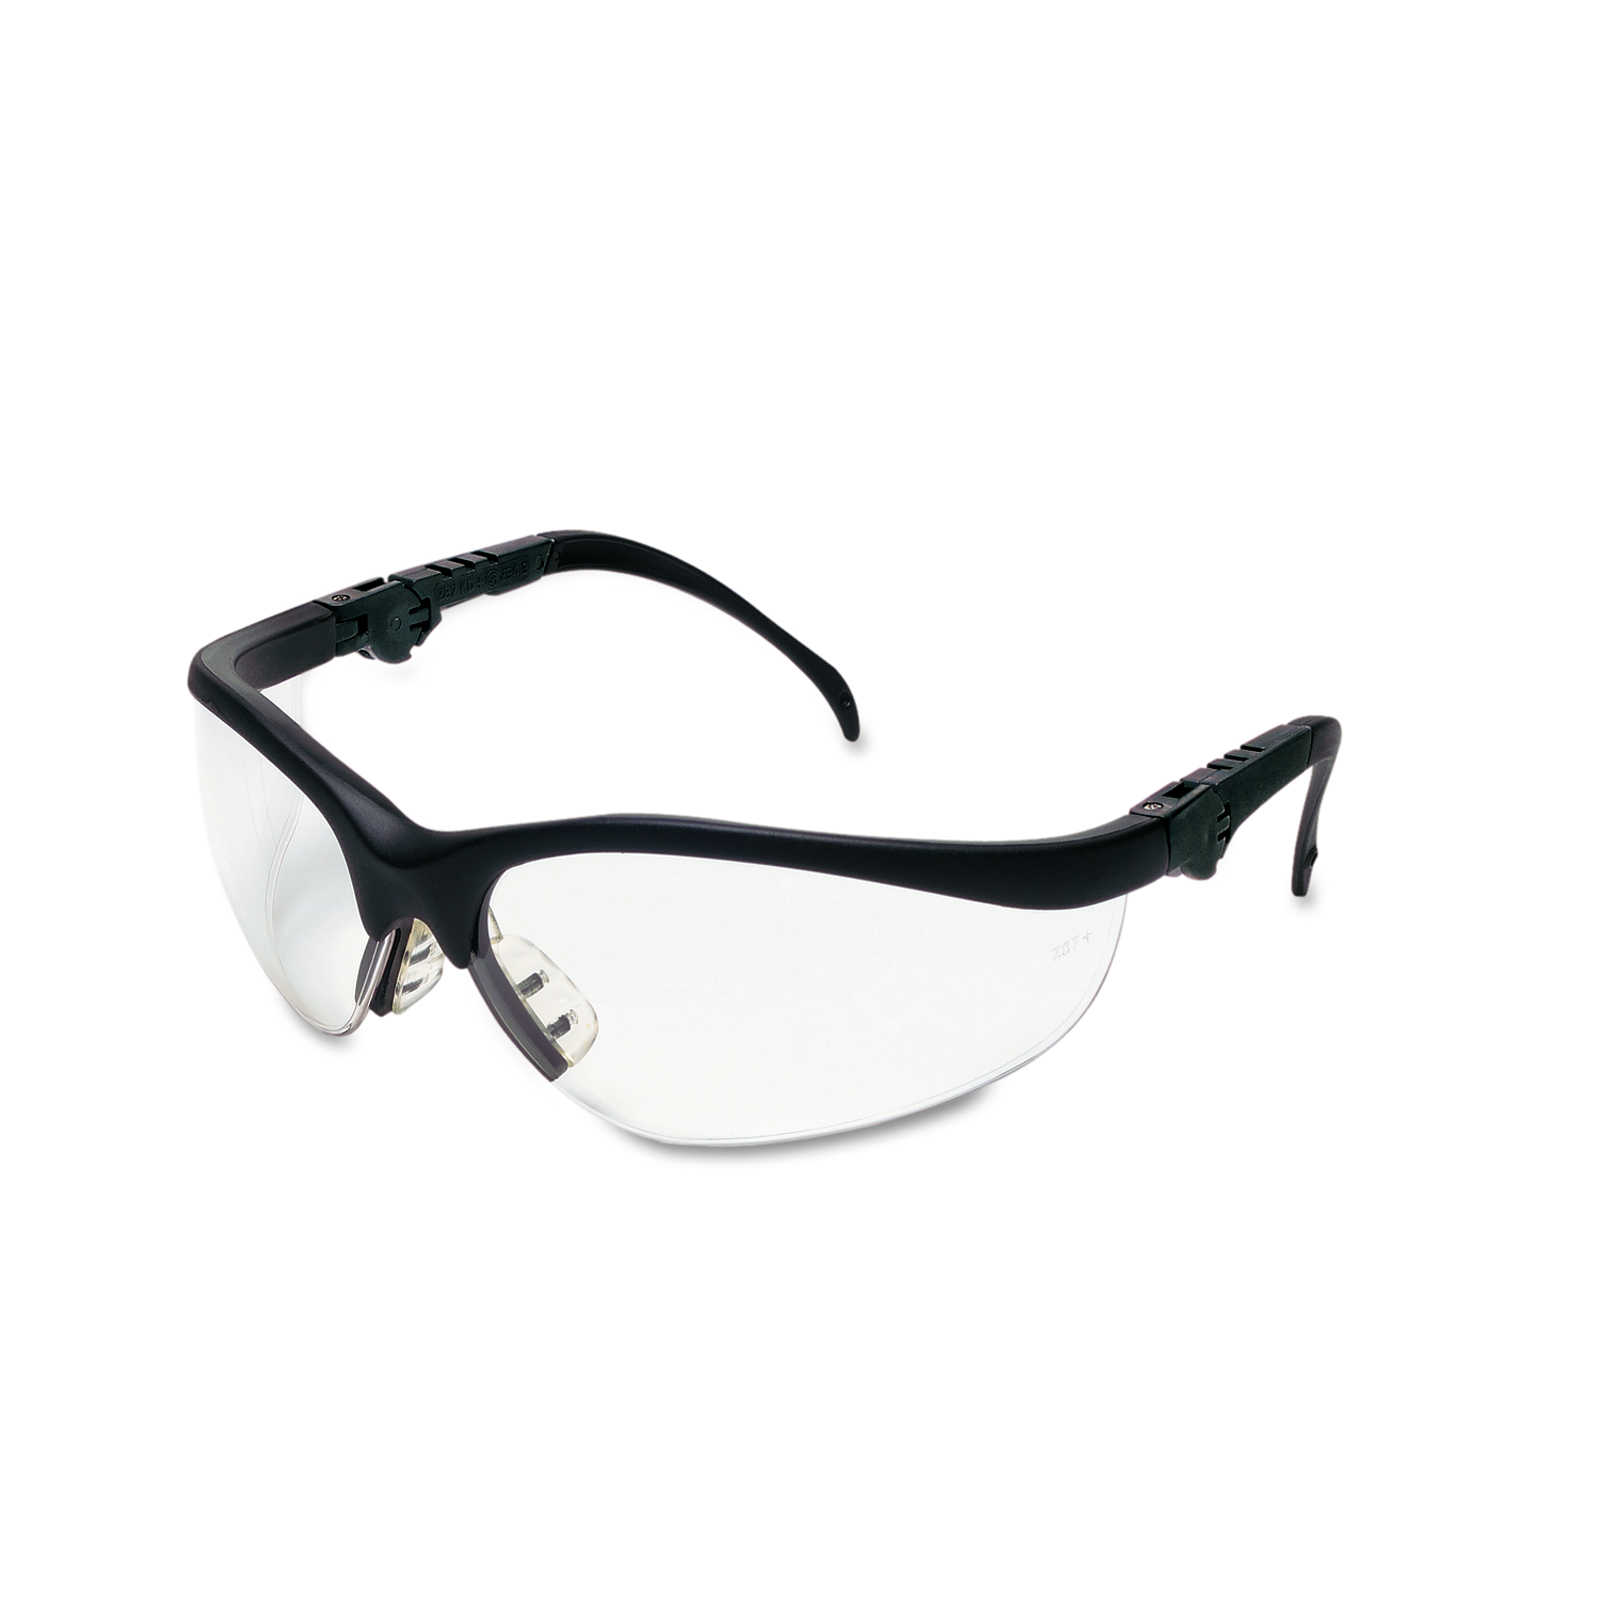 Crews Klondike Magnifier Safety Glasses